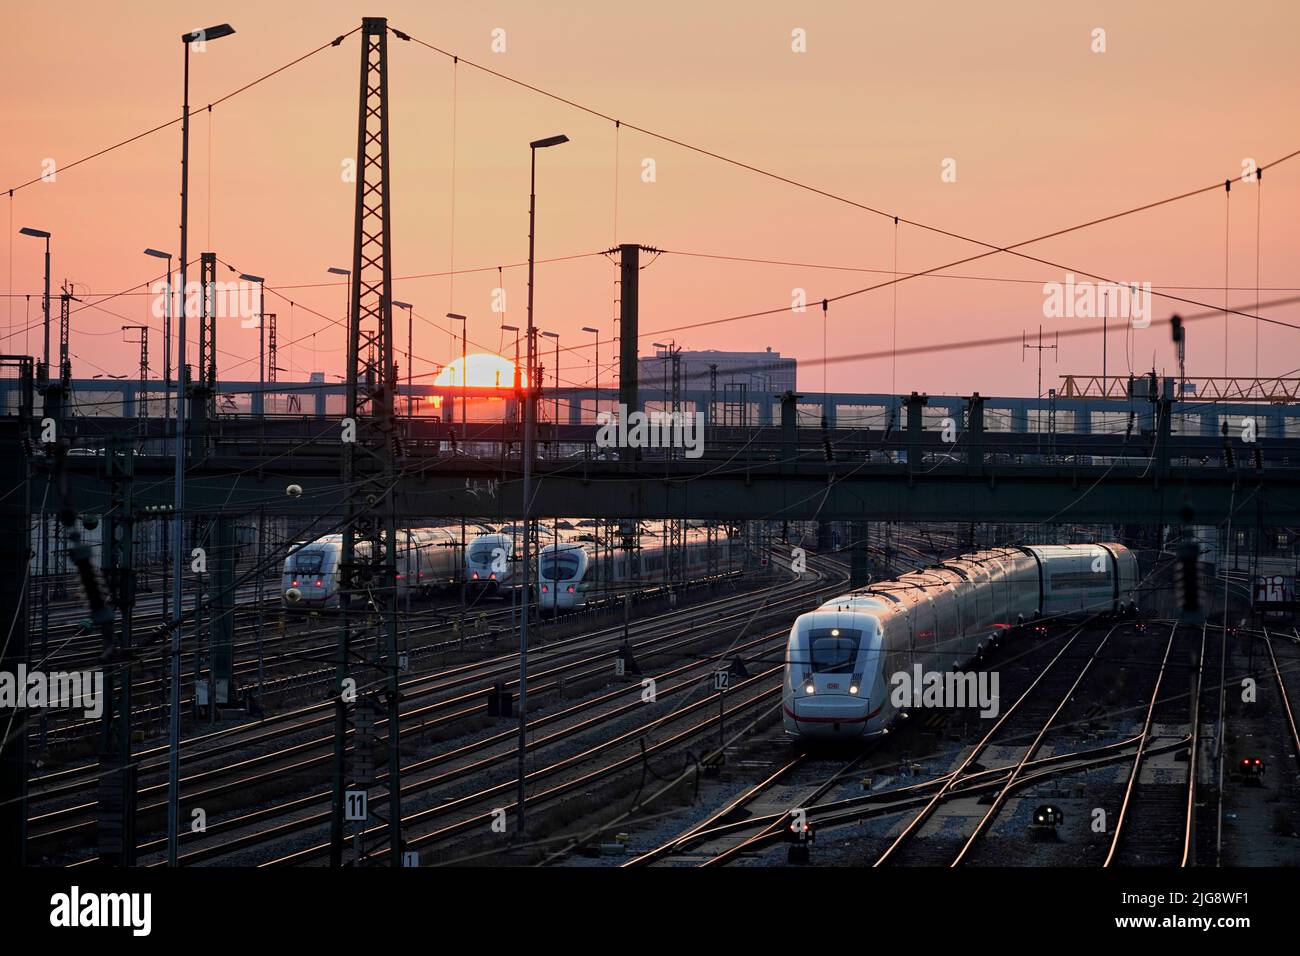 Germany, Bavaria, Munich, main station, Hackerbrücke, tracks, ICE, evening, sunset Stock Photo